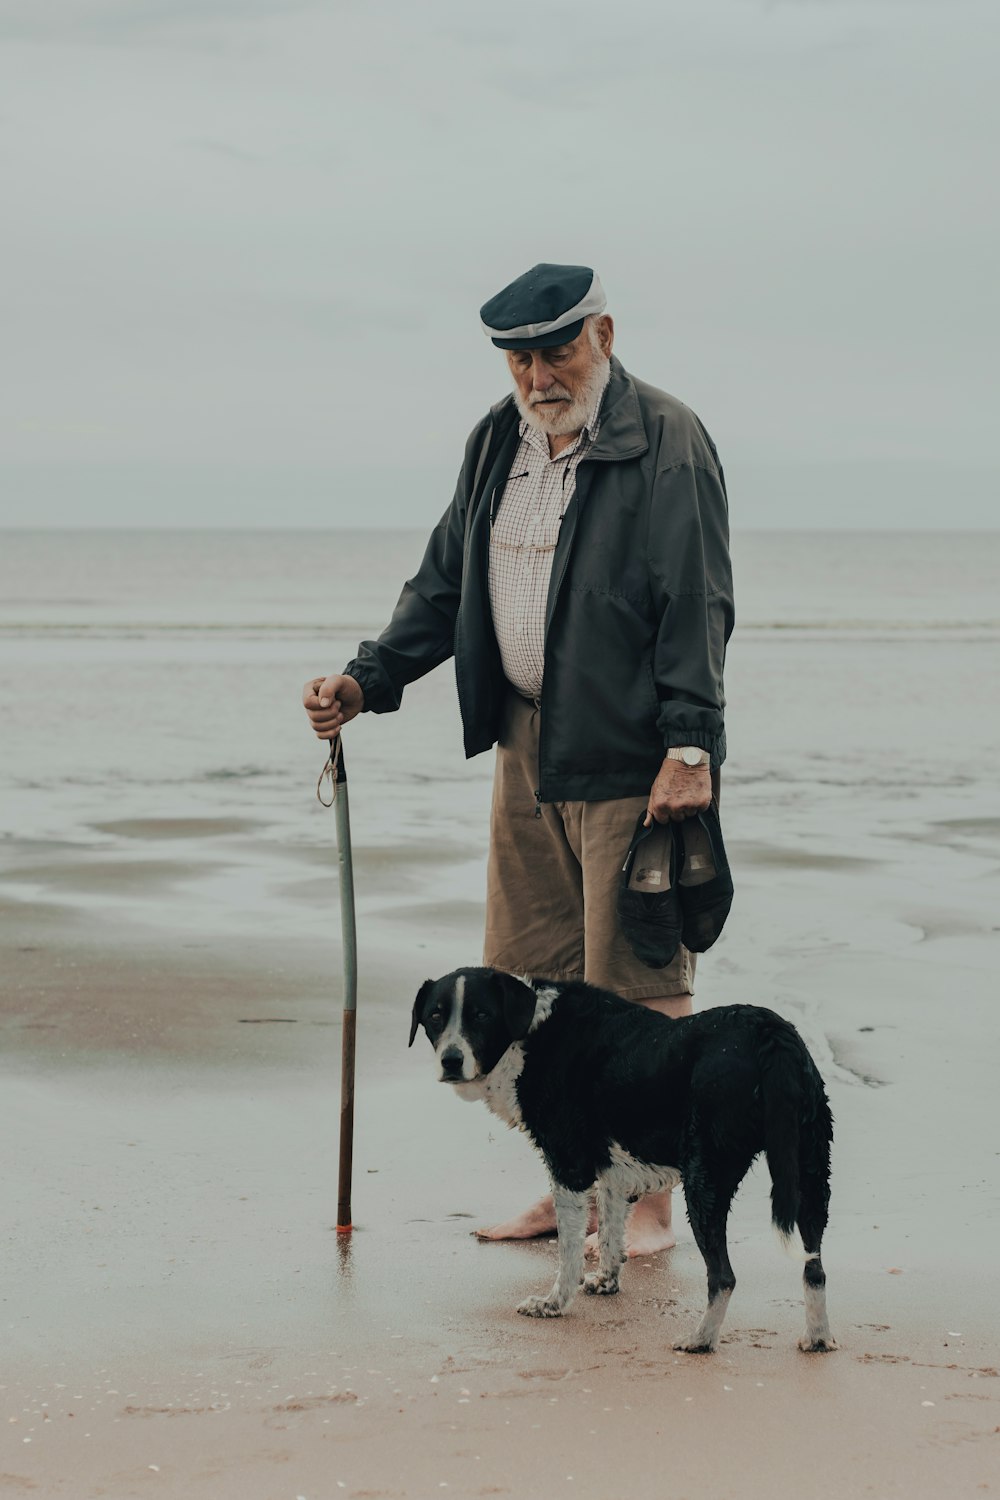 Mann im grauen Mantel mit schwarz-weißem Kurzmantelhund tagsüber am Strand